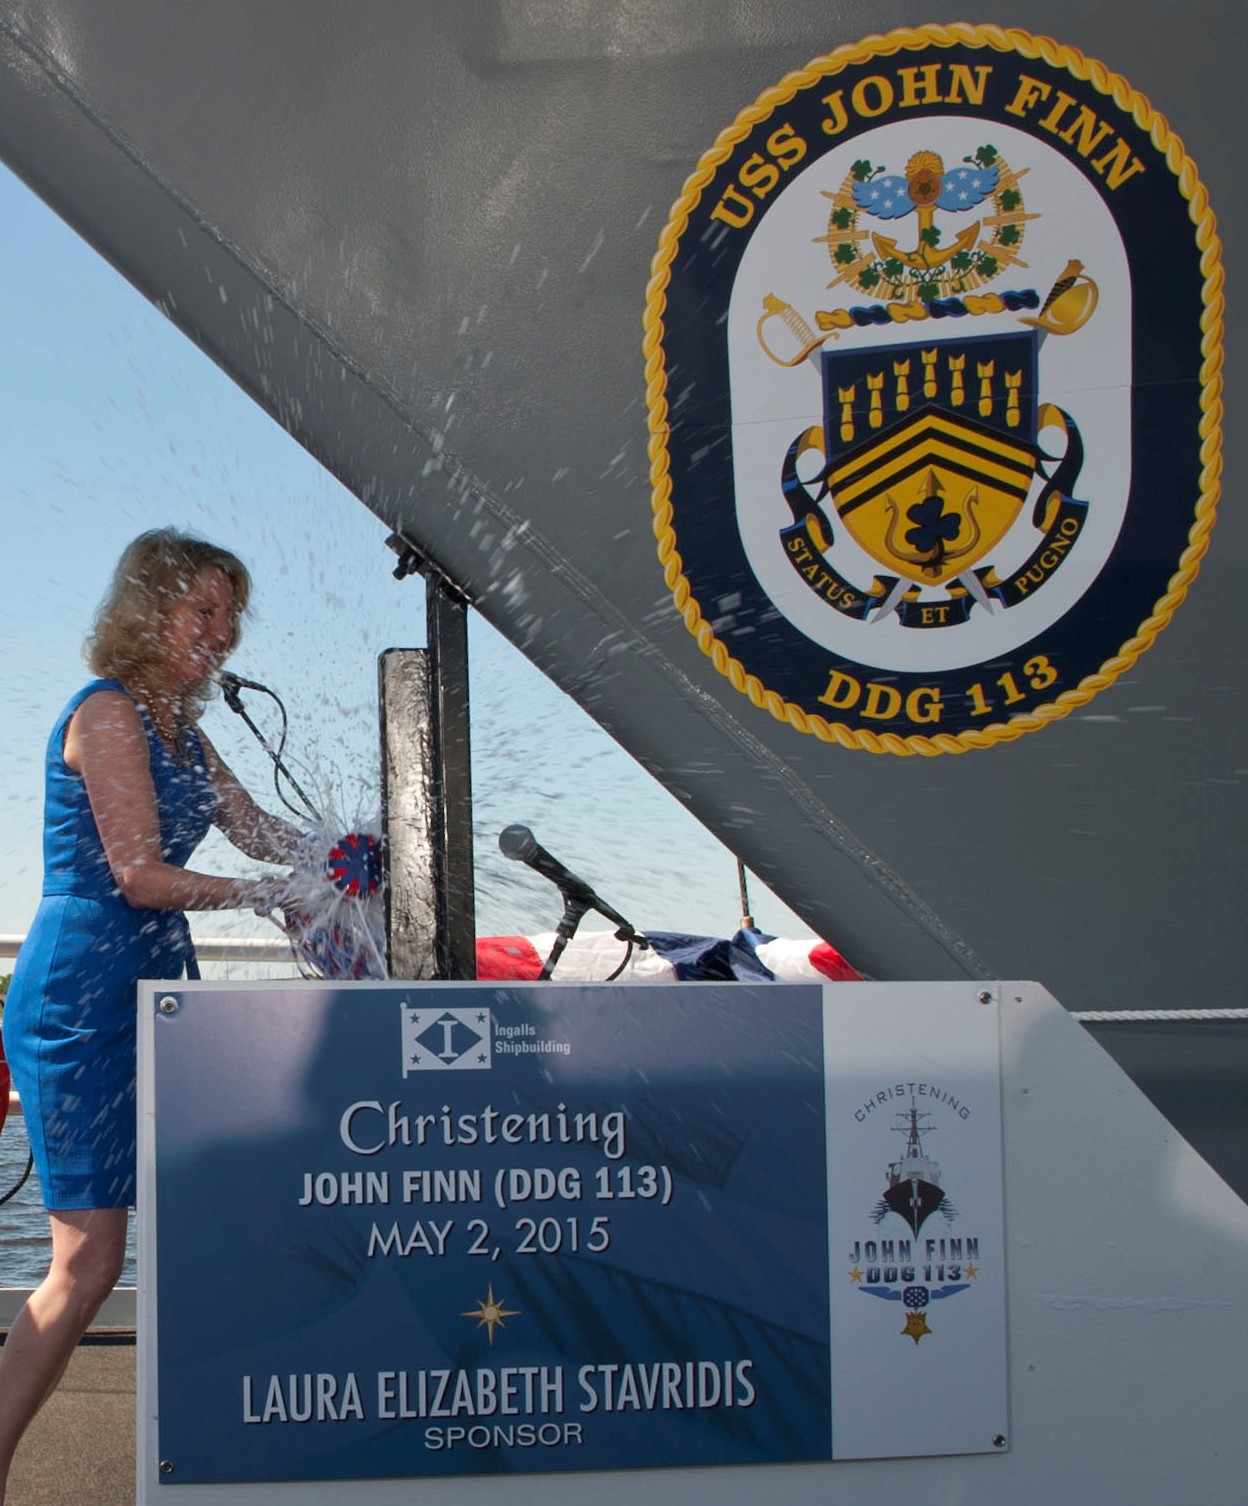 ddg-113 uss john finn arleigh burke class guided missile destroyer us navy aegis 04 christening ceremony pascagoula